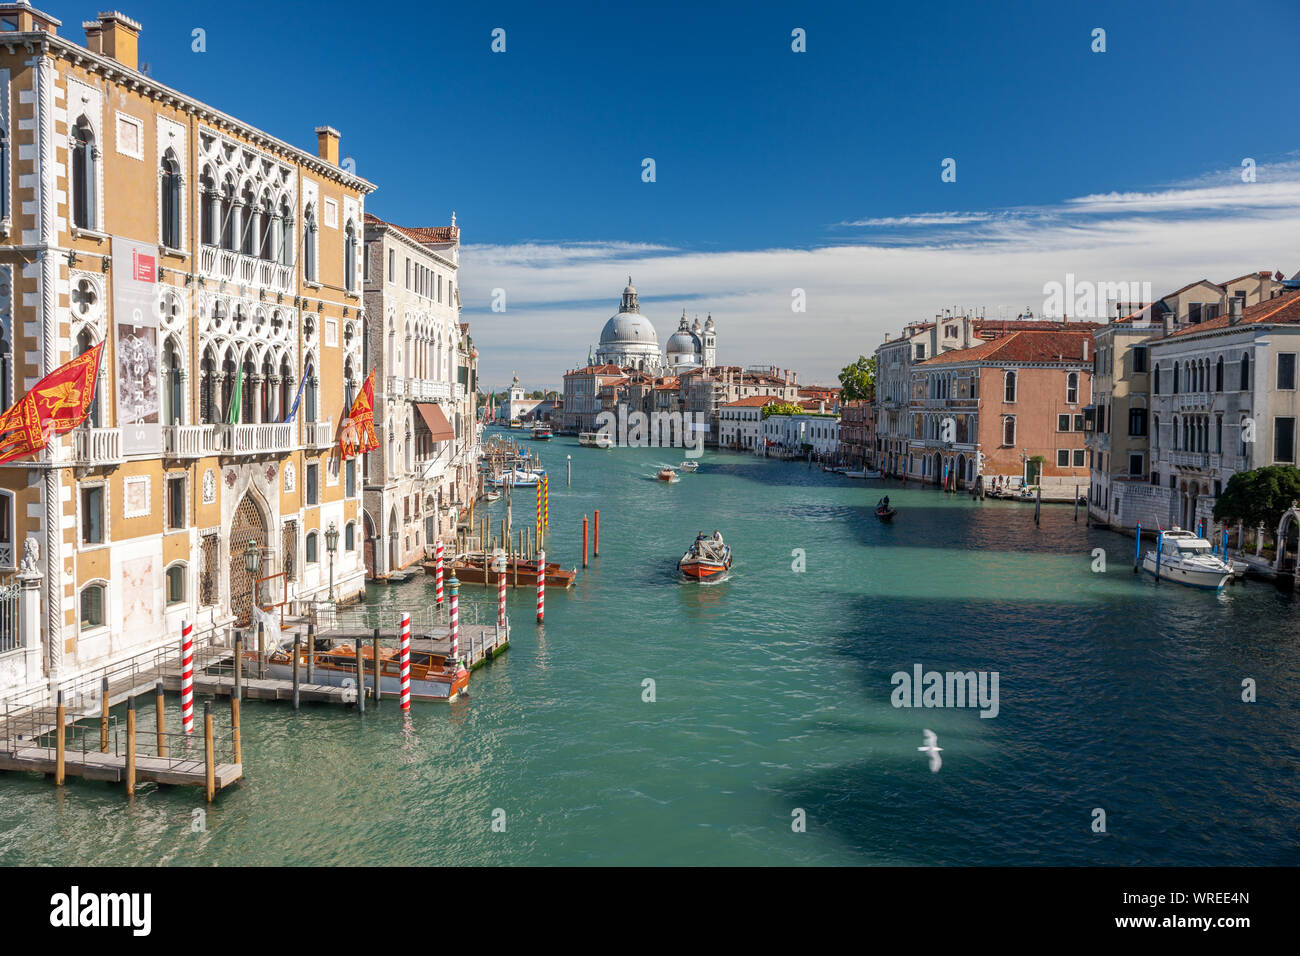 Vista del Gran Canal Venecia Italia en el sol con varios barcos en el canal Foto de stock